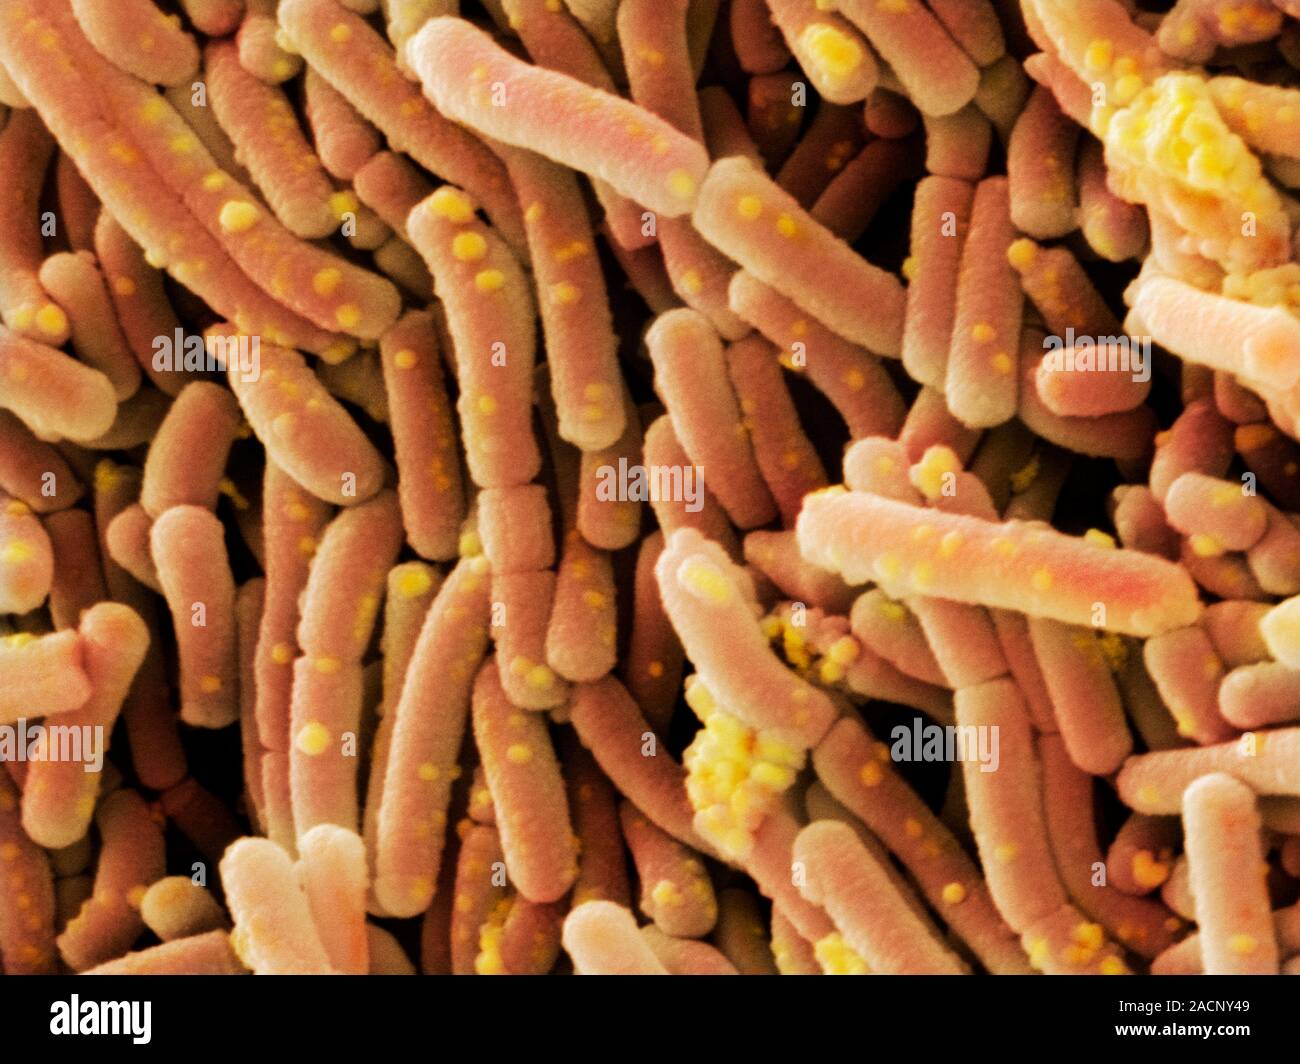 Lactobacillus casei batteri. Scanning electron microfotografia (SEM) del batterio  Lactobacillus casei. L. casei è un batterio che si trova in un ronzio Foto  stock - Alamy